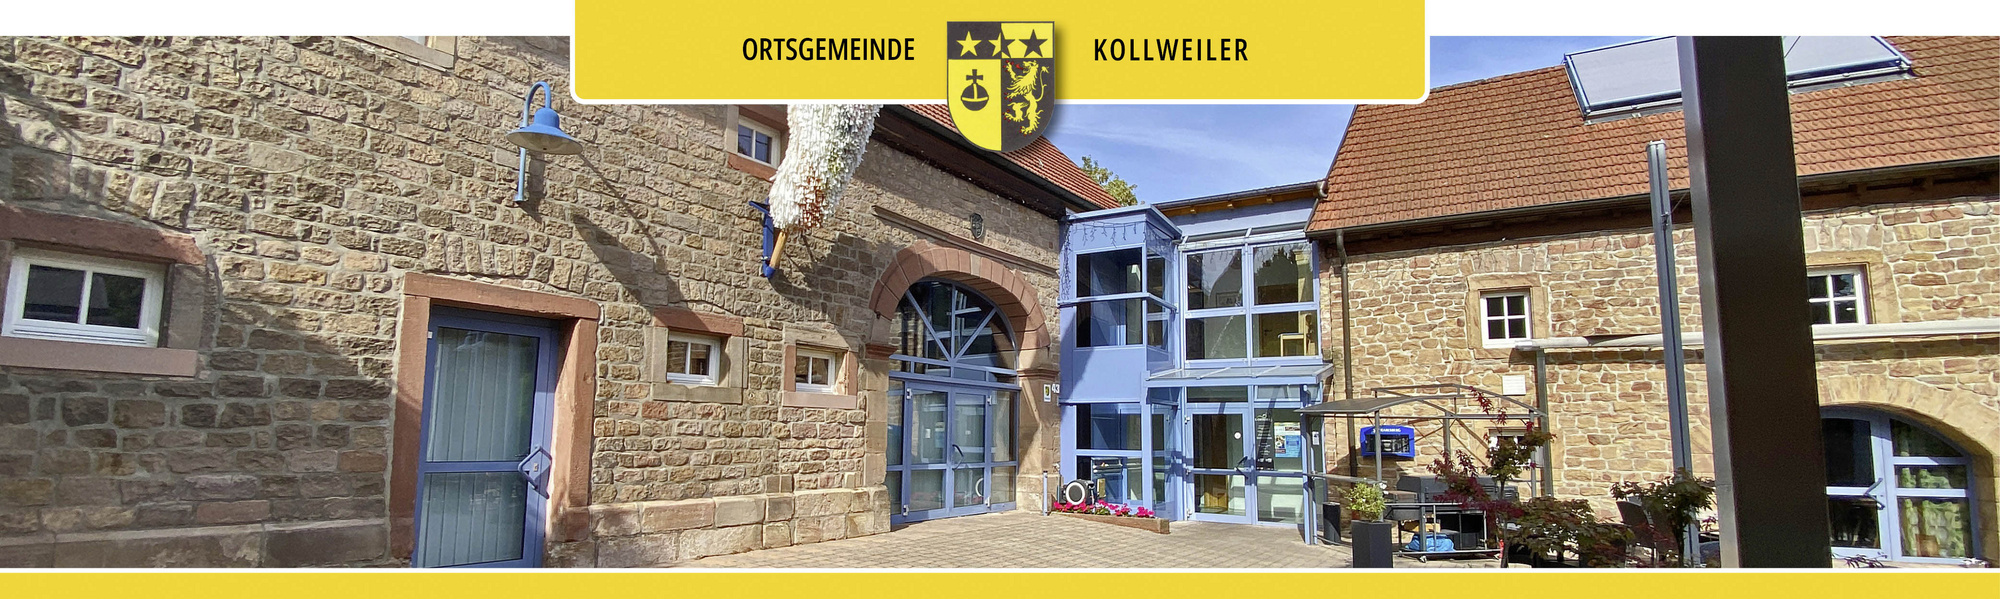 Kollweiler Bürgerhaus